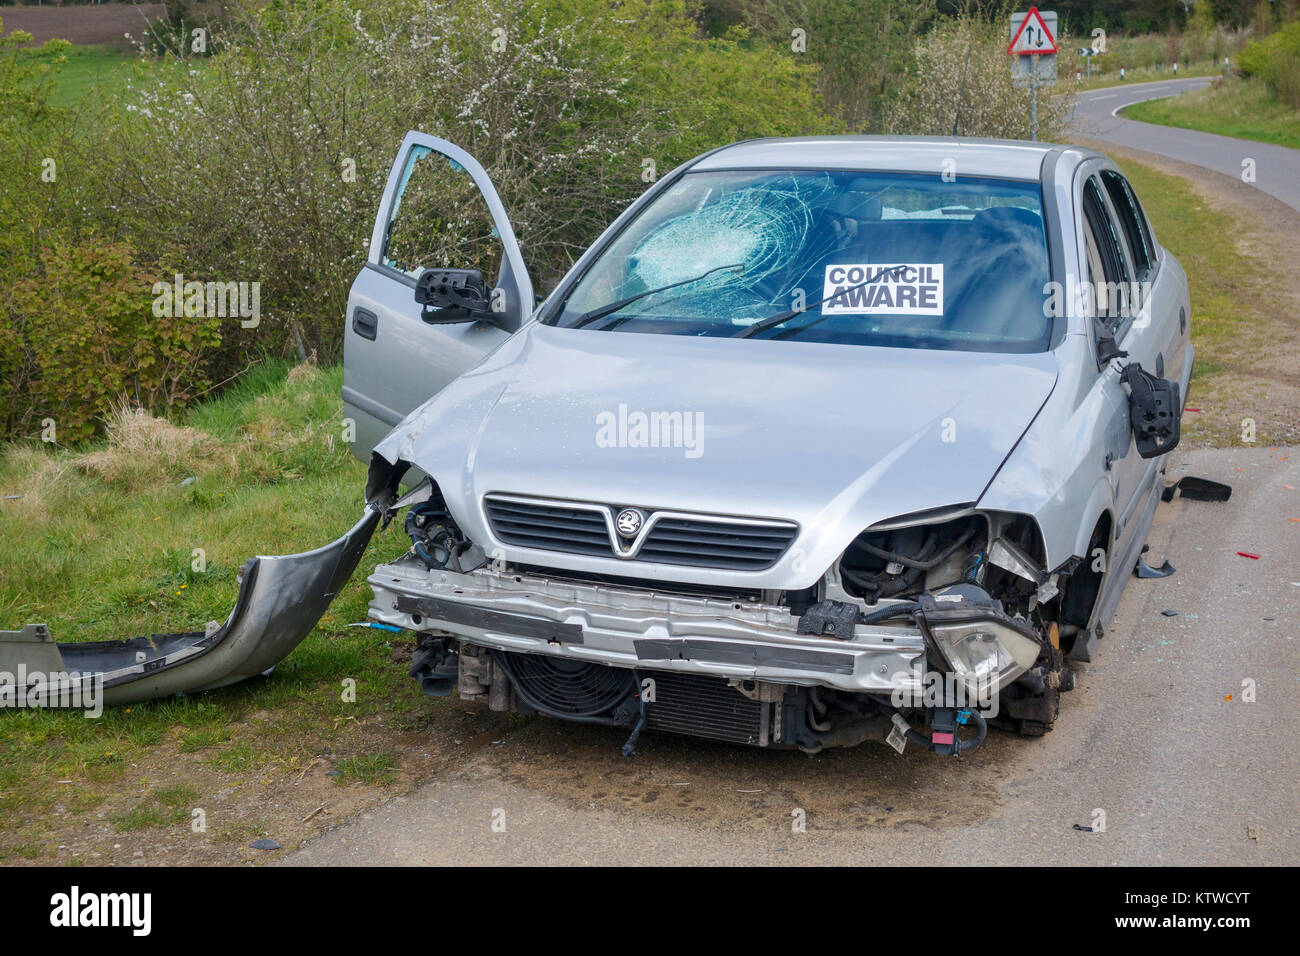 Spogliato e soggetto ad atti vandalici auto abbandonate in un vicolo del paese con il Consiglio consapevole adesivo sul parabrezza Surrey, Regno Unito Foto Stock